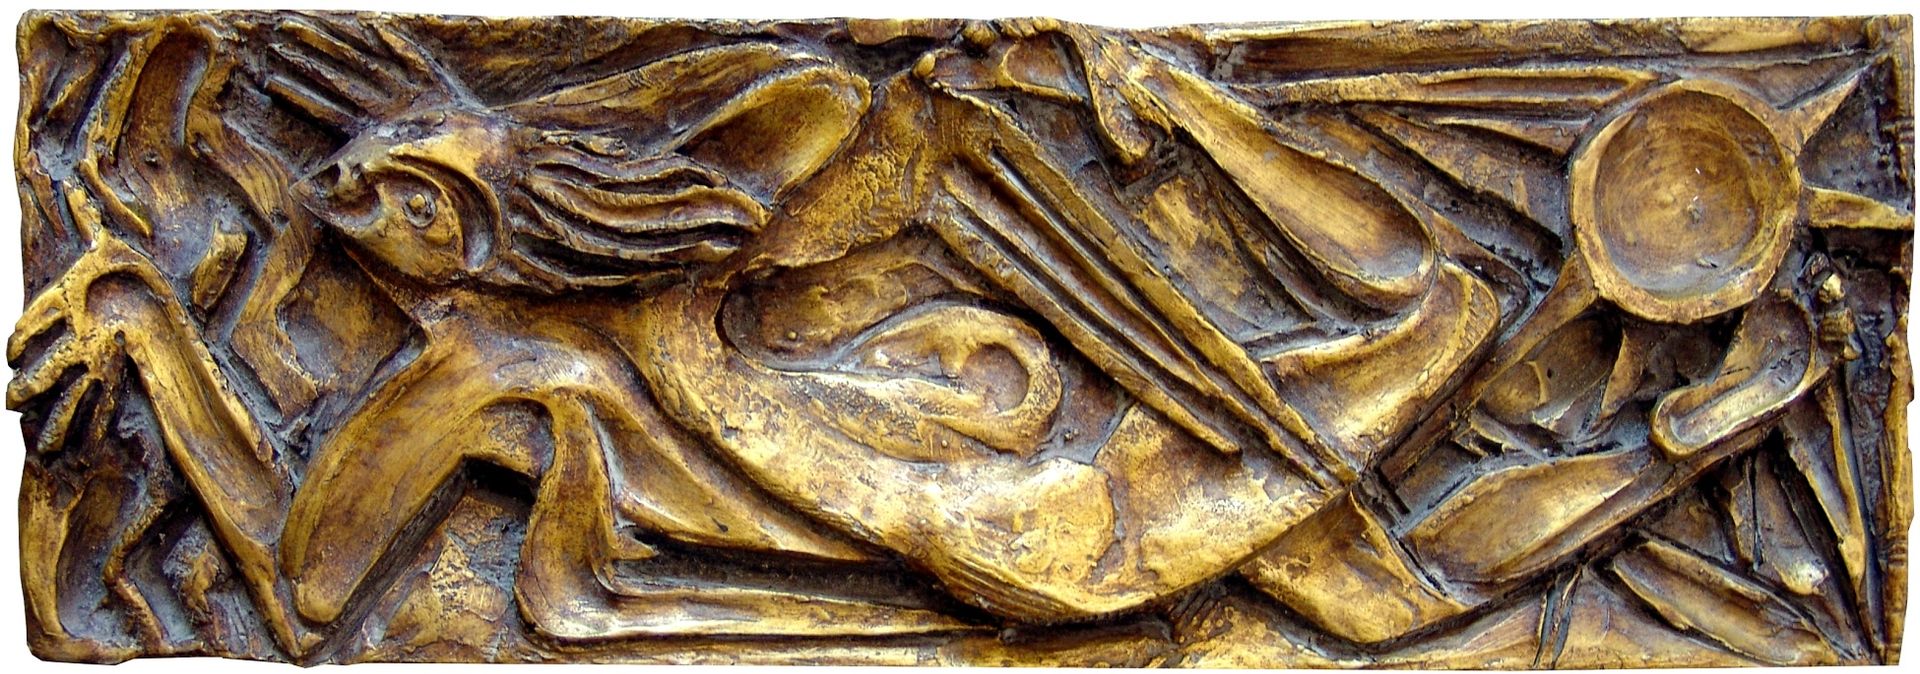 EUGENIO PATTARINO senza titolo, bassorilievo in terracotta, 20x58x5 cm

firma de&hellip;